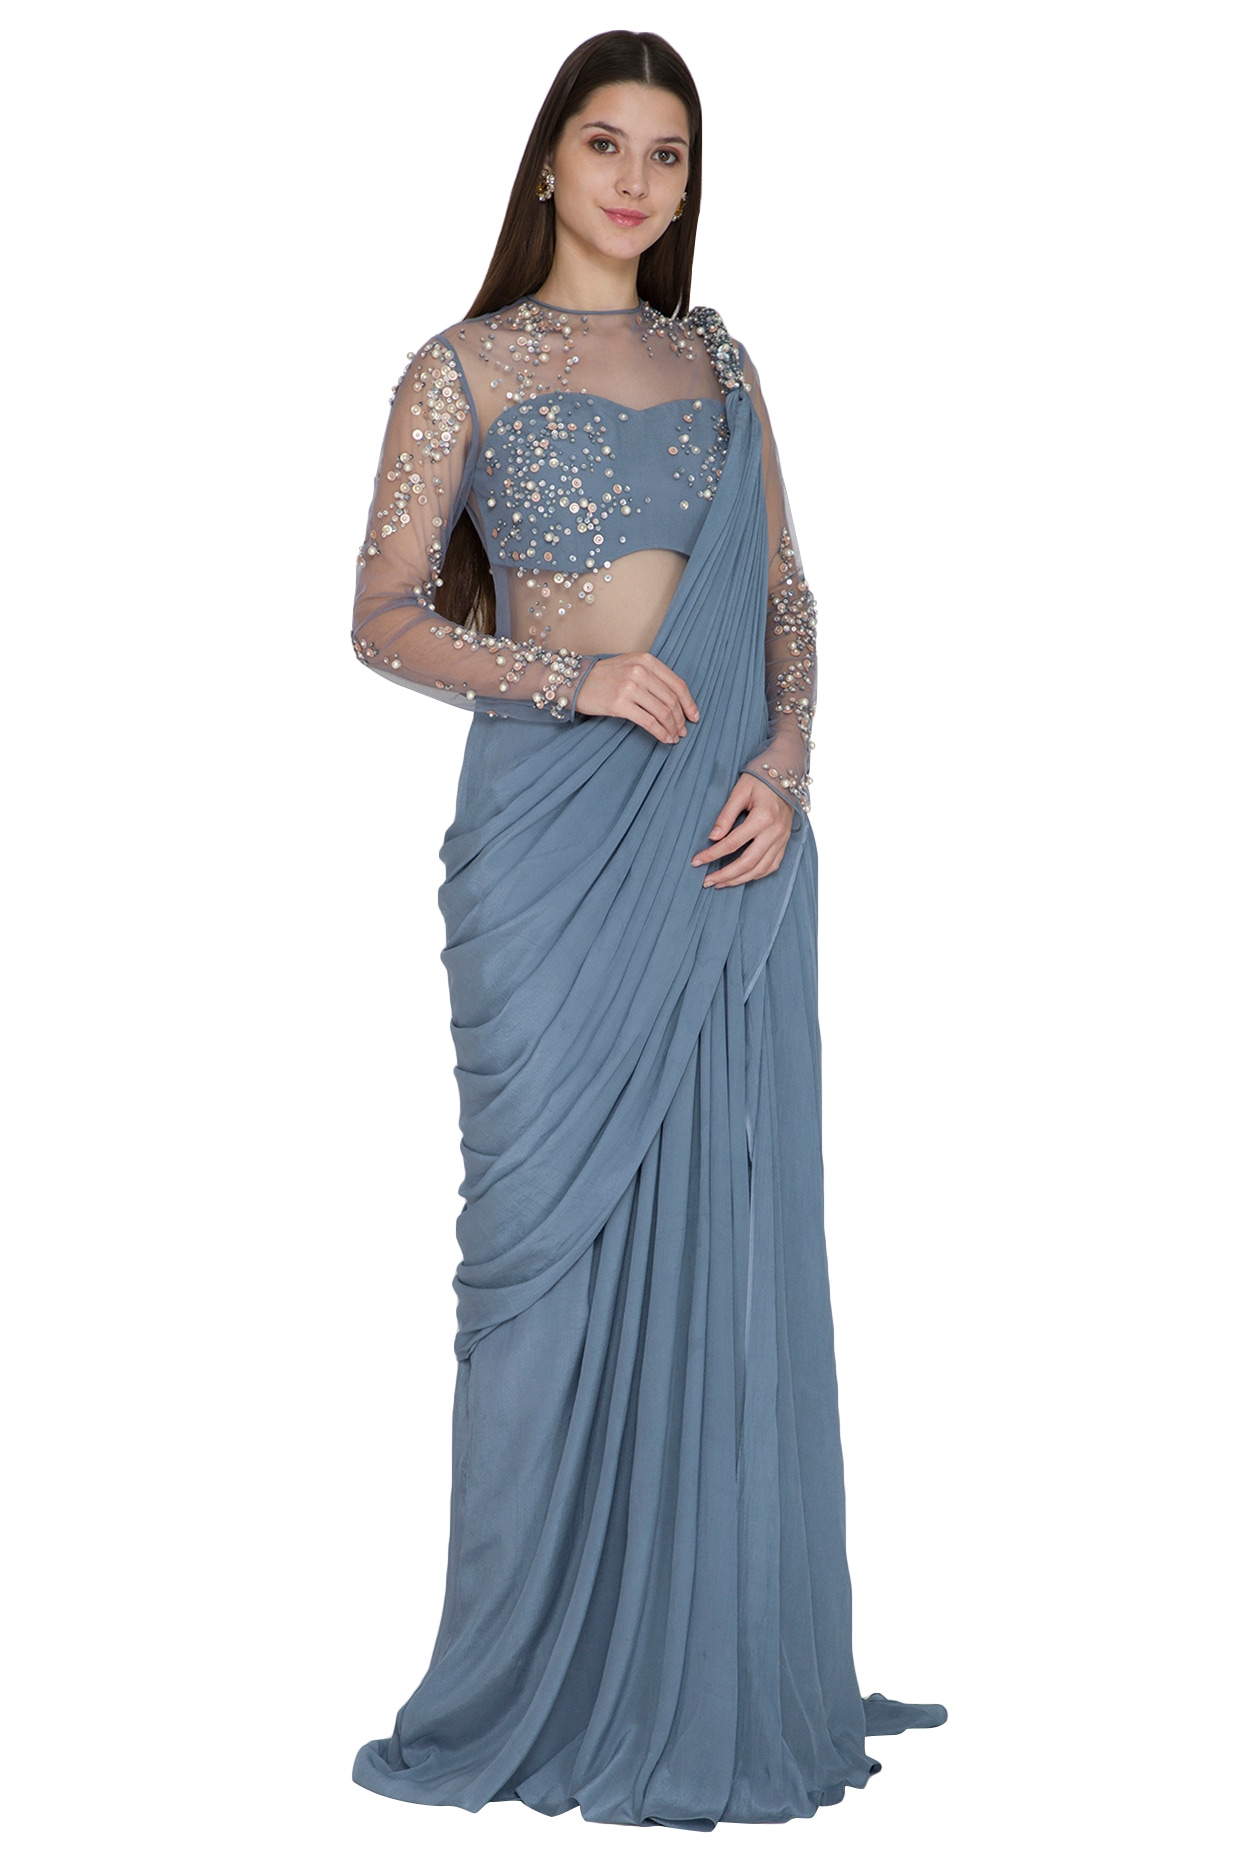 Latest Silk gown design ideas || Saree pattern long gown dress design ||  Long gown designs - YouTube